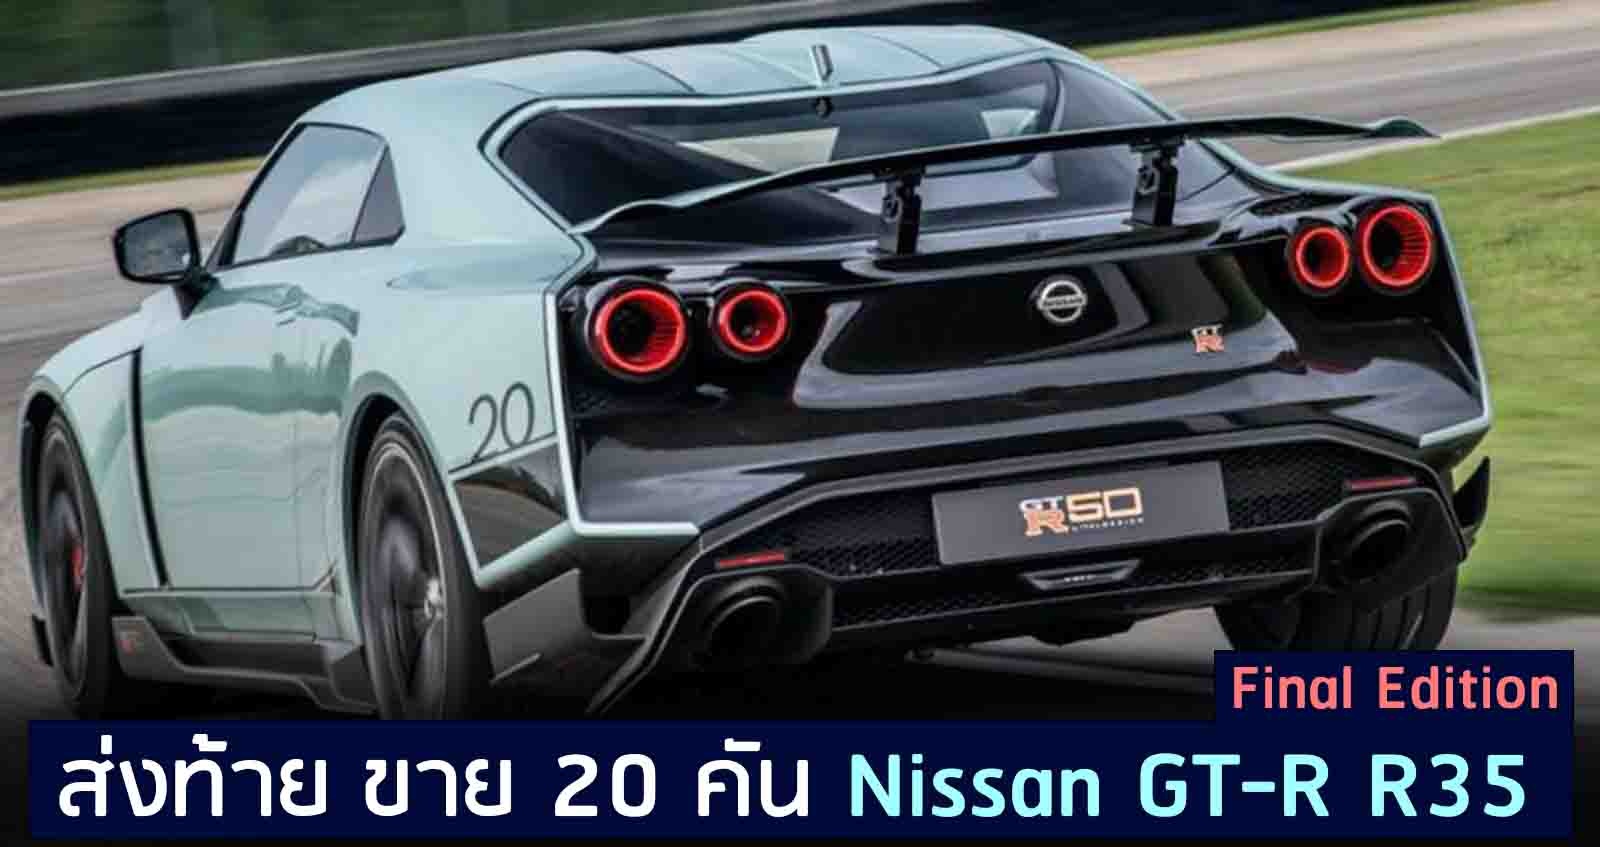 ส่งท้าย ขาย 20 คัน Nissan GT-R R35 Final Edition